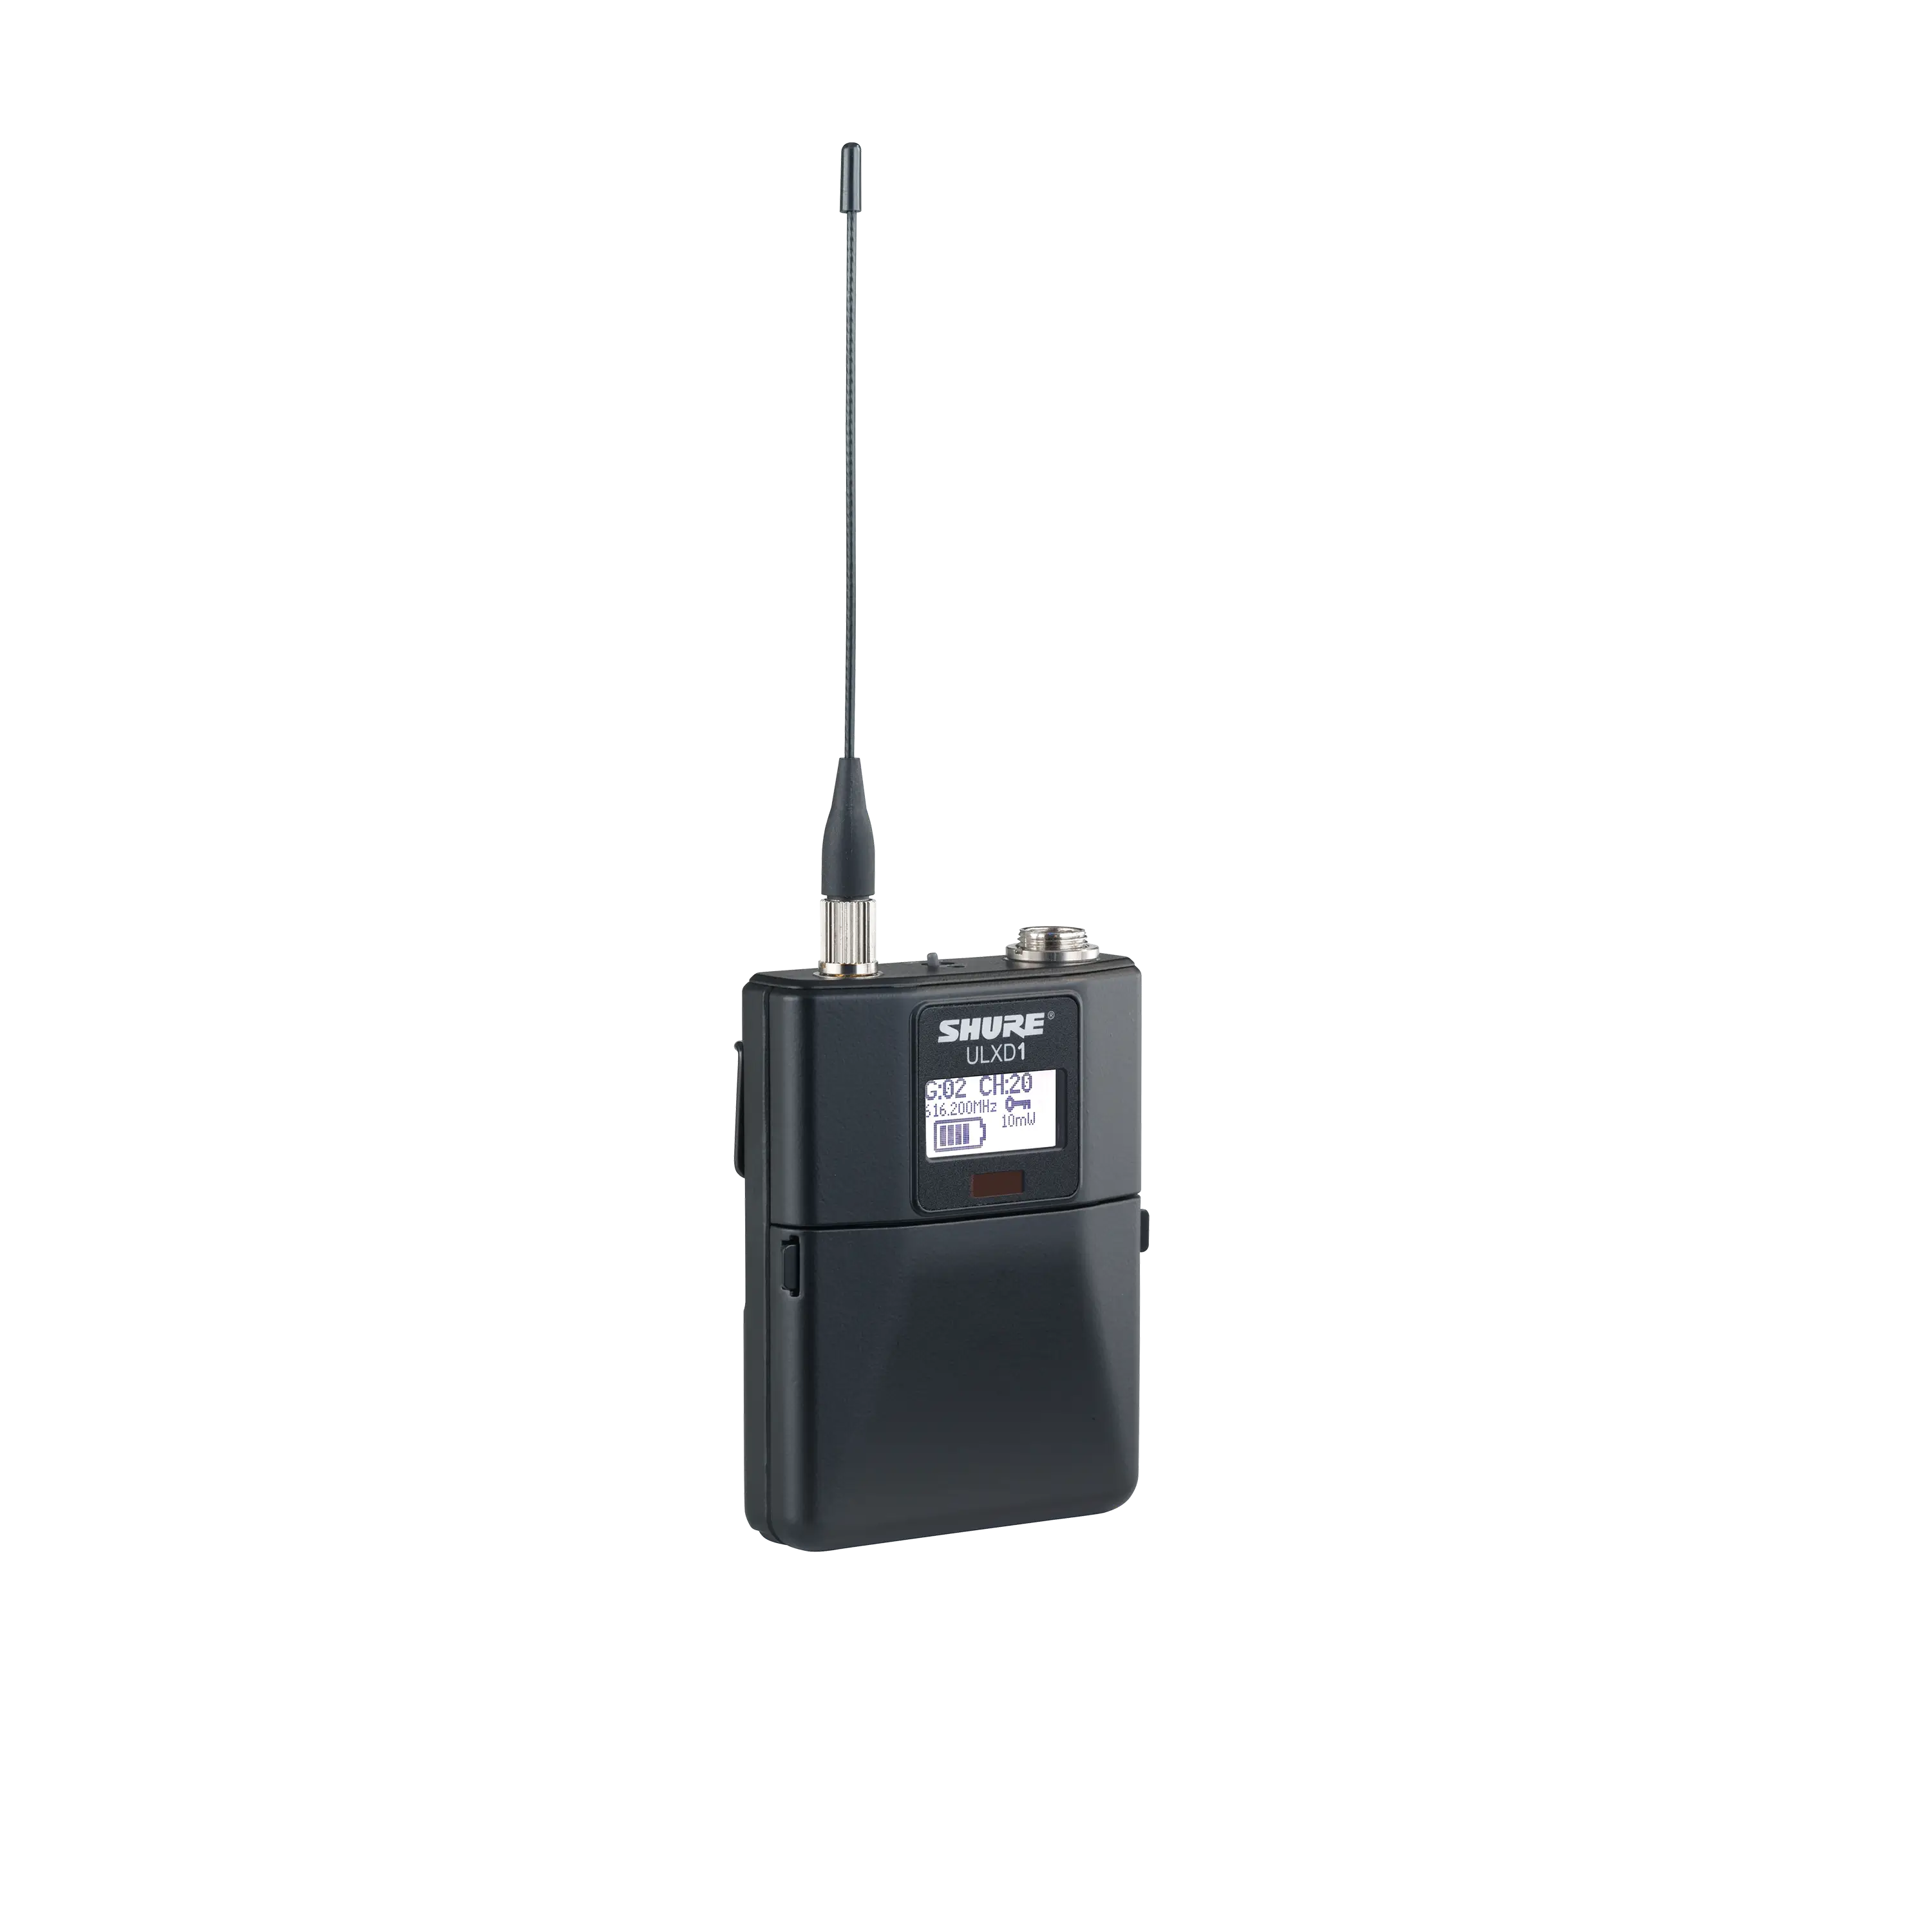 ULXD®1 - ワイヤレスボディパック型送信機 - Shure 日本